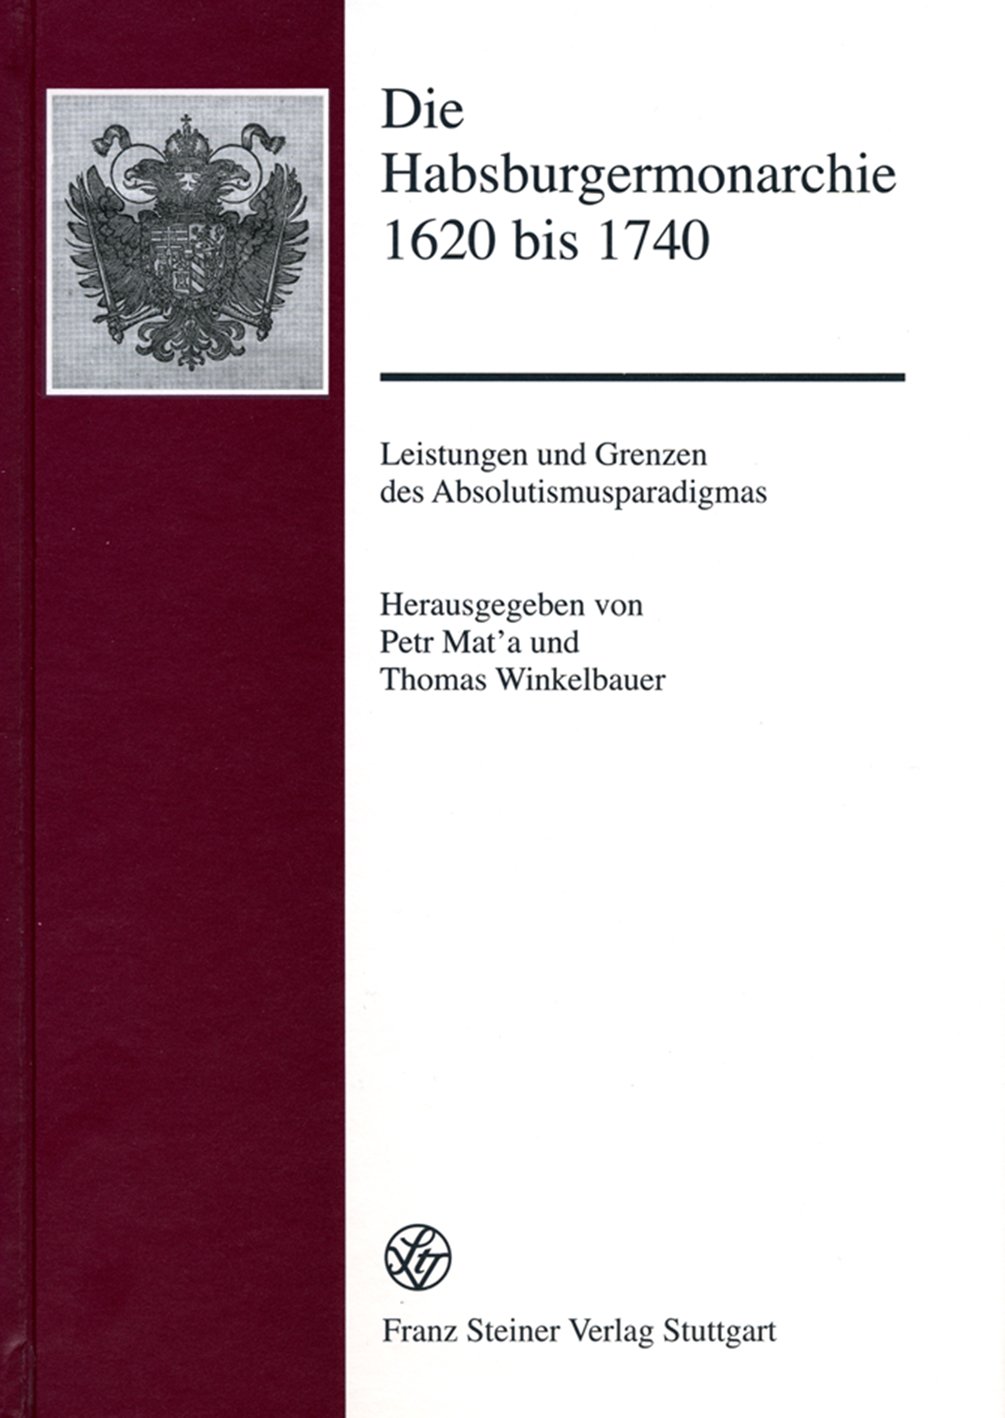 Die Habsburgermonarchie 1620 bis 1740